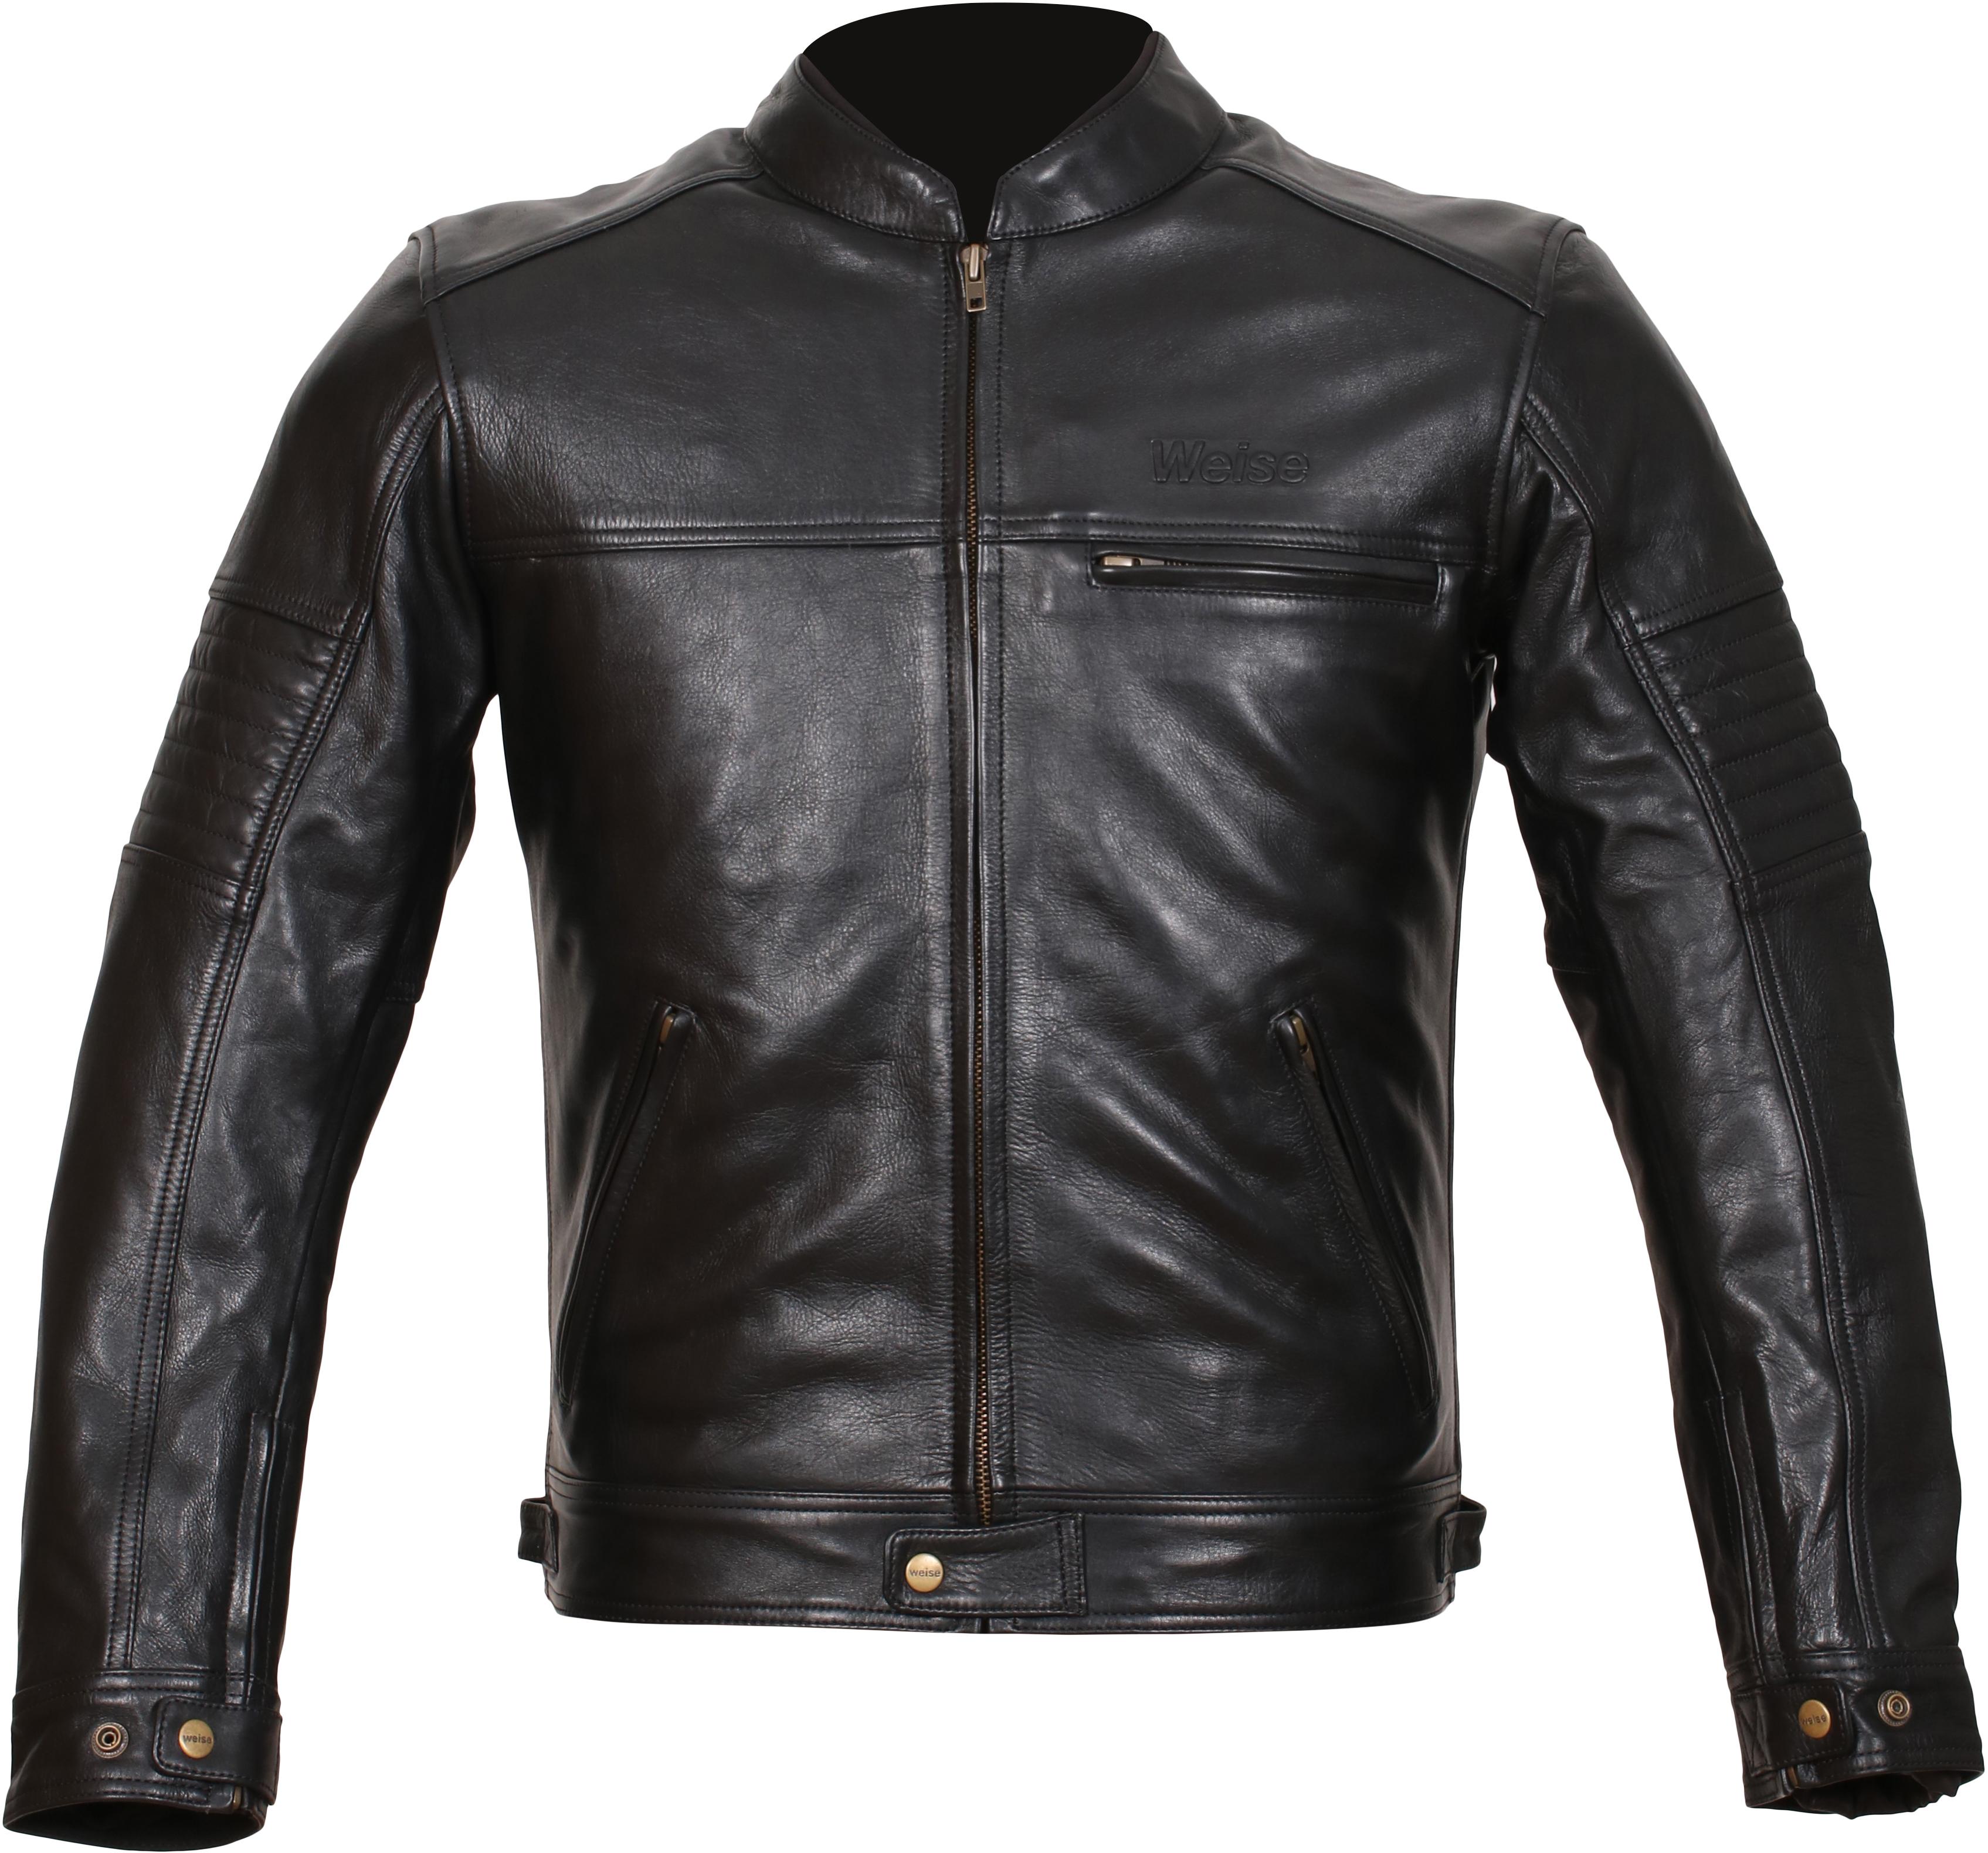 Weise Cabot Leather Motorcycle Jacket - Black, 48